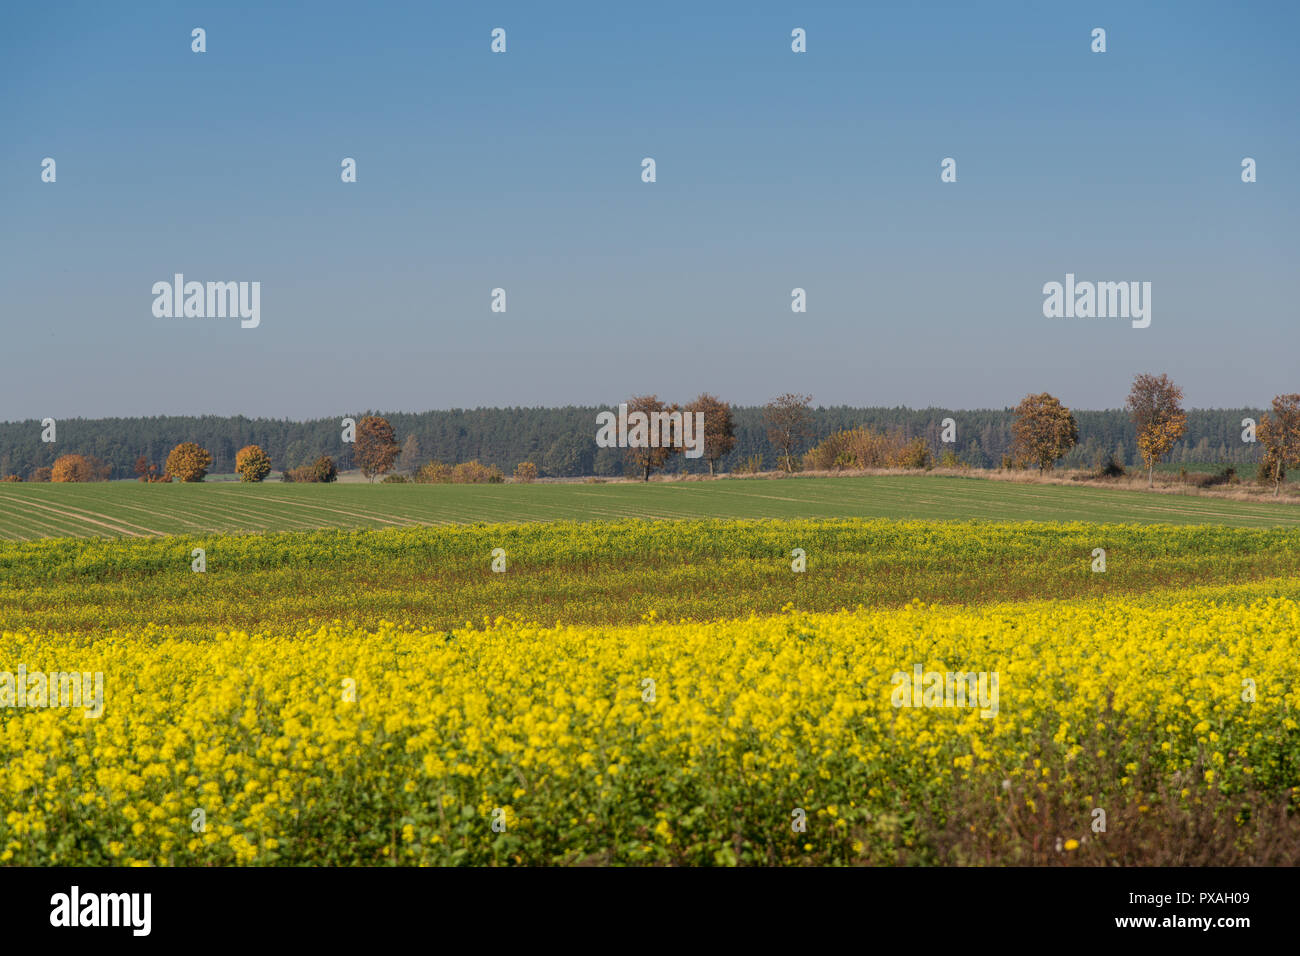 Landschaft, Ende der Welt, Herbst, blühende Buchweizen, Ackerland, Aussicht, herbstliche Farben, gelb, grün, gold Stockfoto